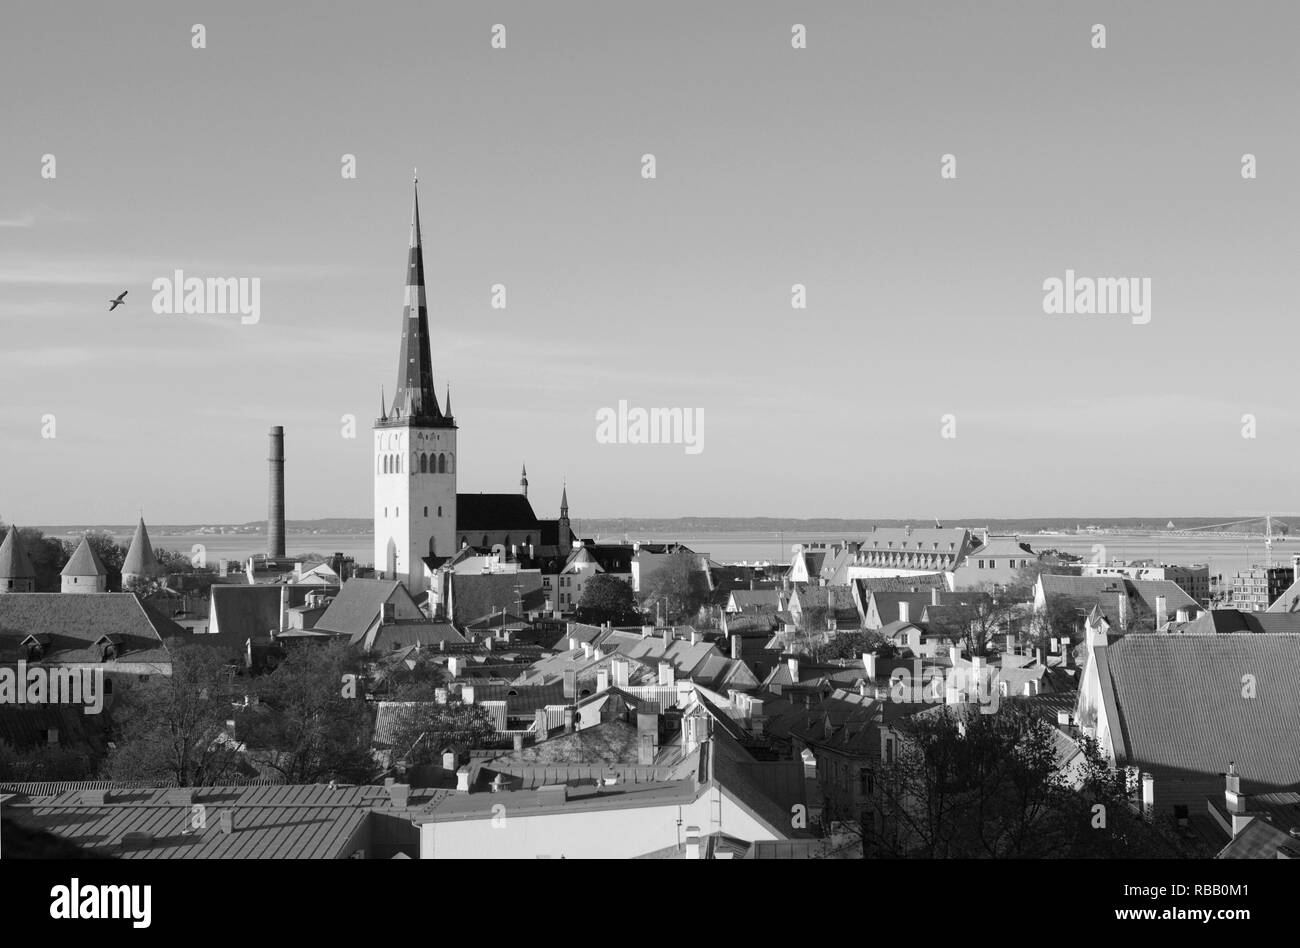 L'église St Olaf tour s'élève au-dessus des toits de la vieille ville de Tallinn, capitale de l'Estonie. Au-delà de la ville de Tallinn se trouve Bay - monoc Banque D'Images